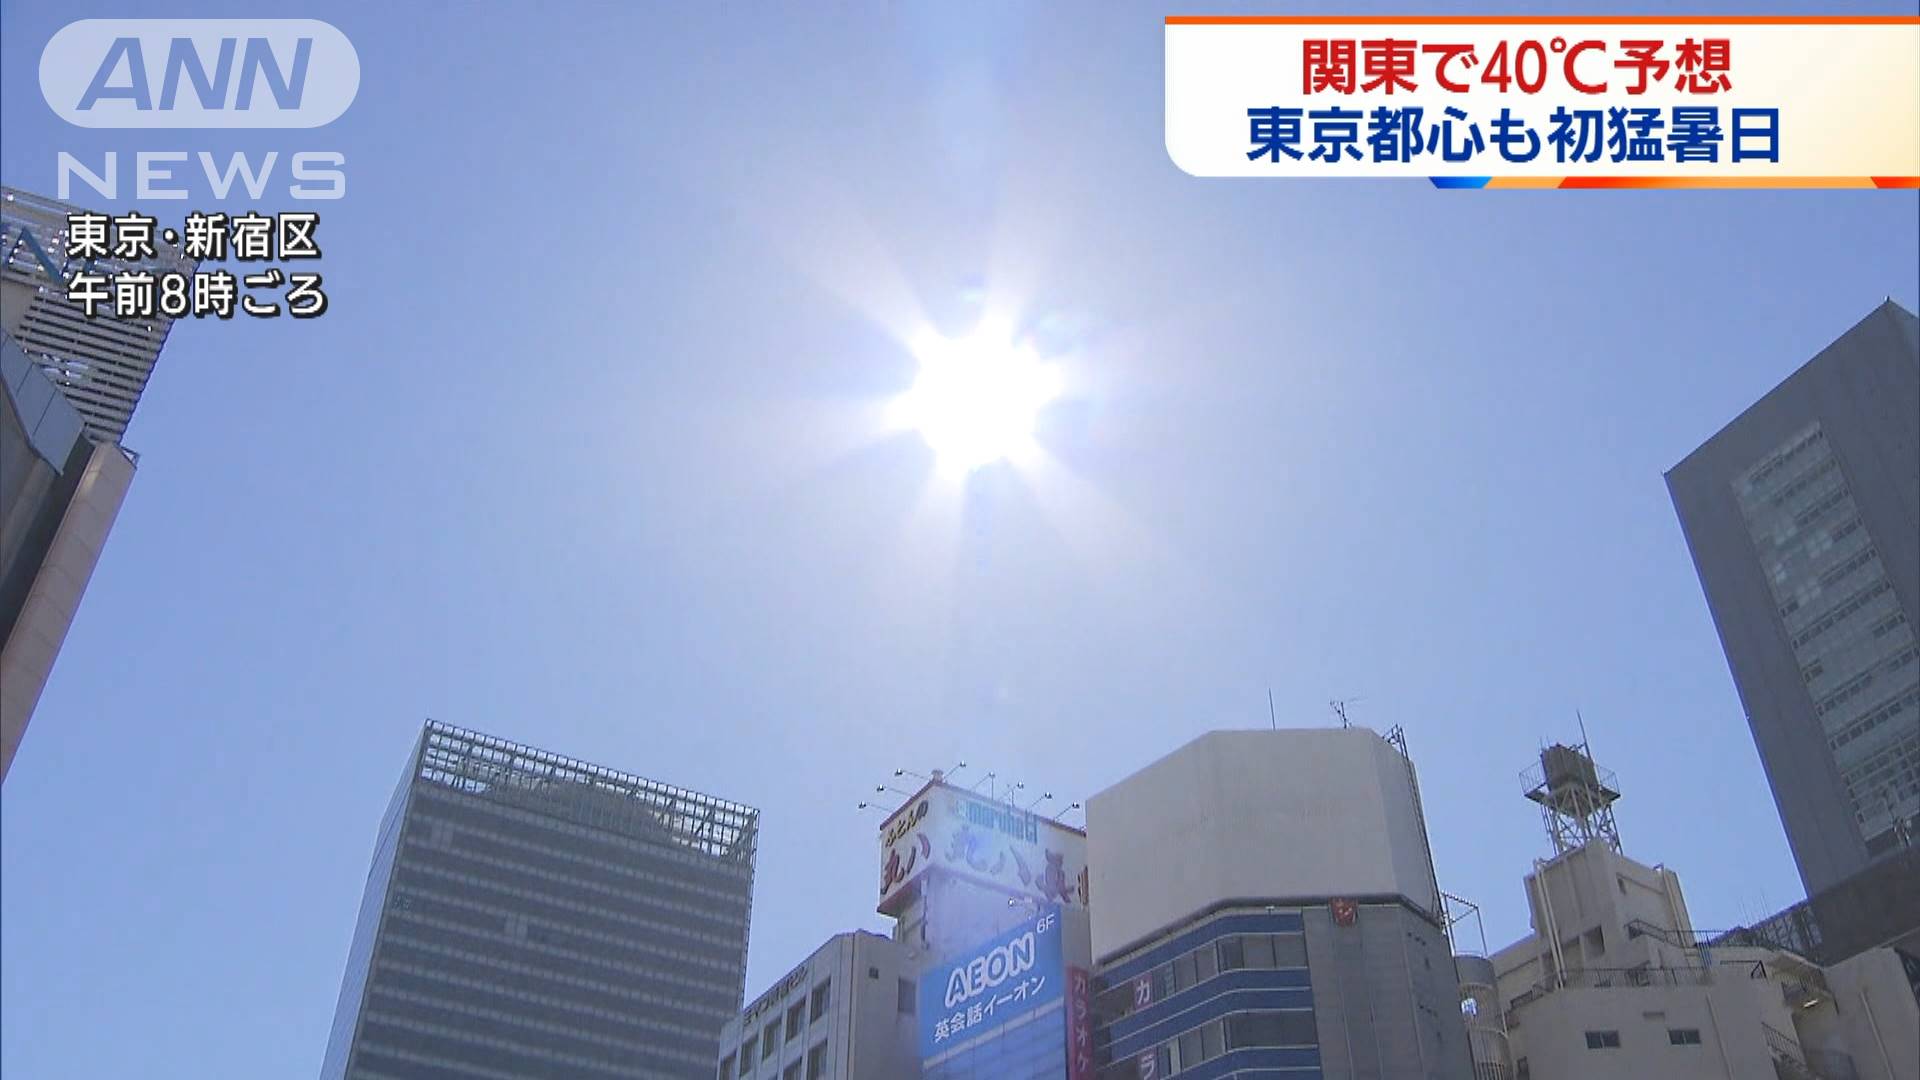 都心は今年初の猛暑日 危険な暑さ 関東で40 予想 テレ朝news テレビ朝日のニュースサイト